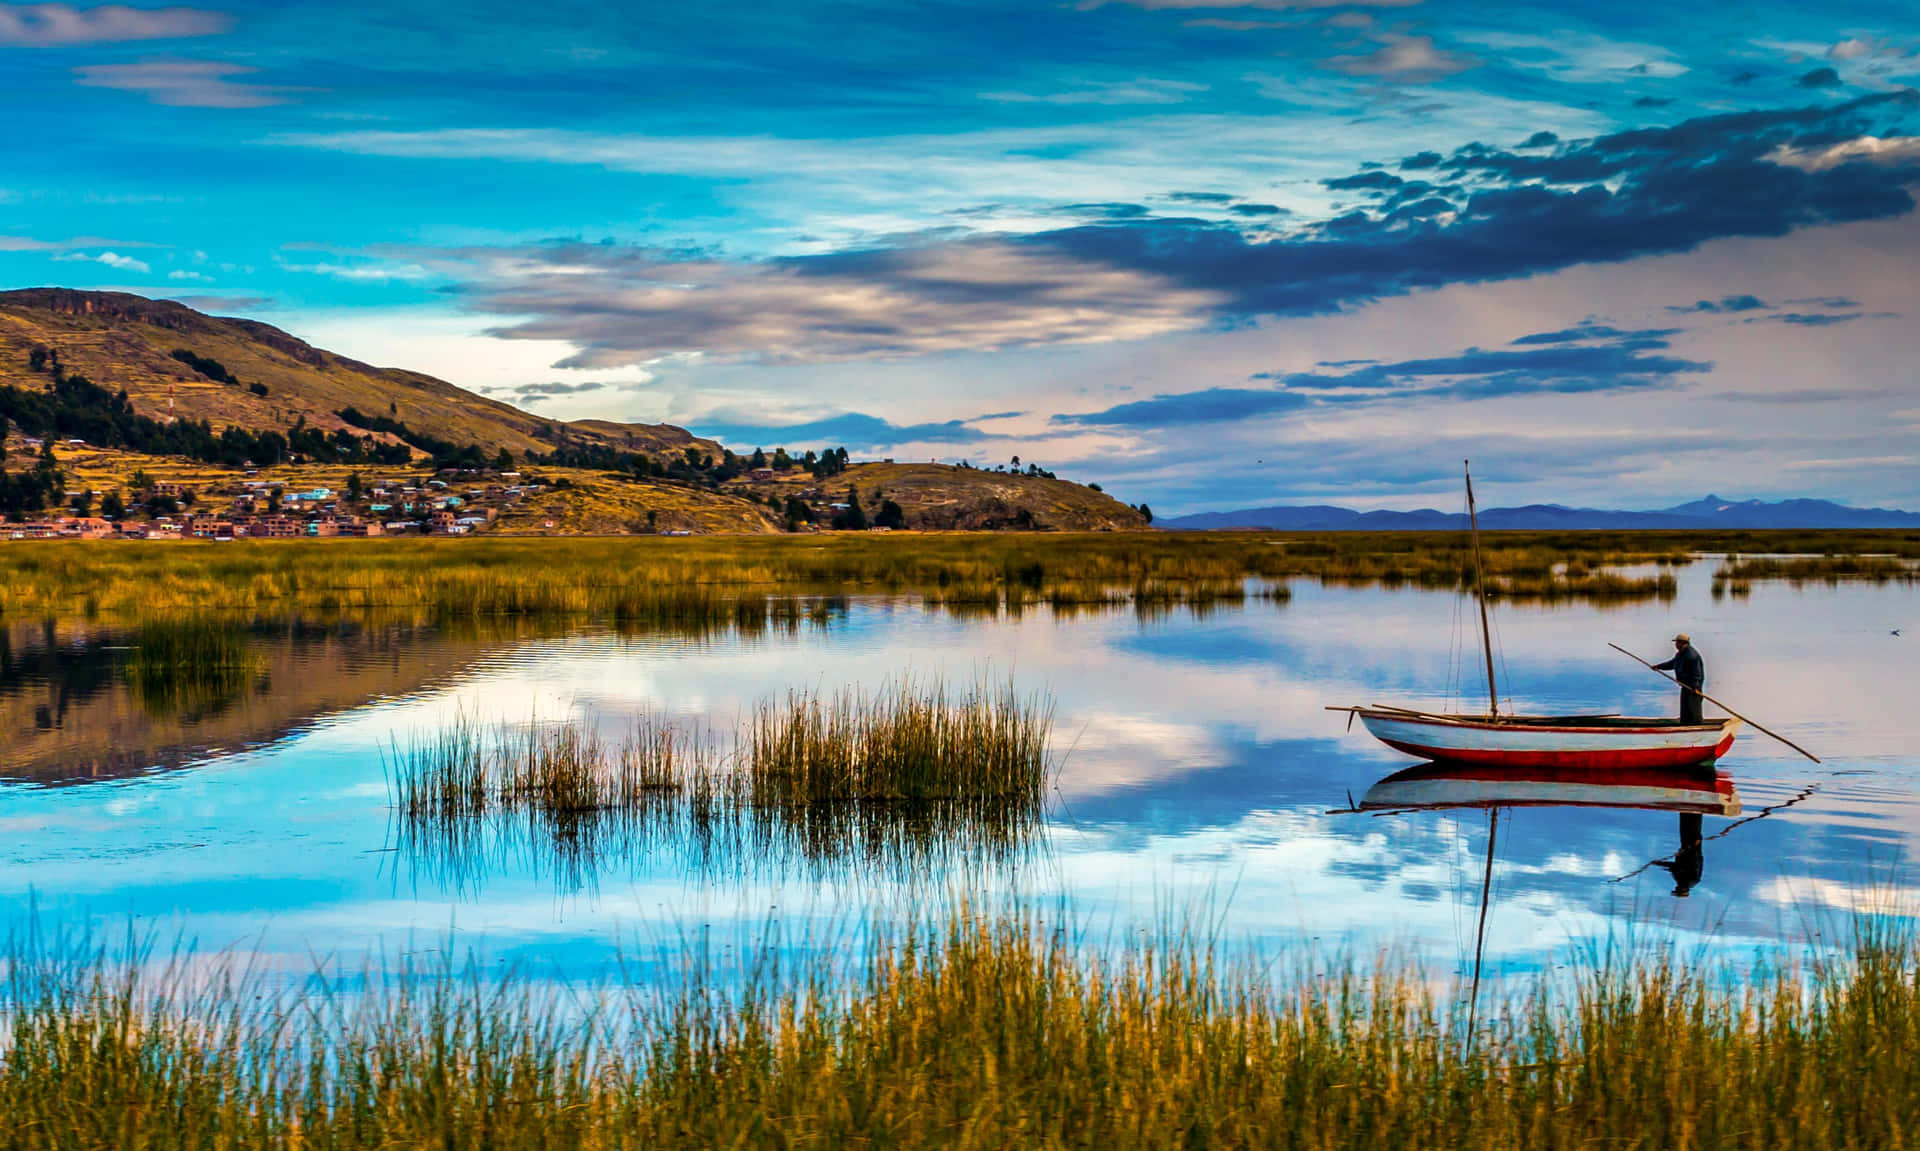 Paisagemde Contraste Nítido Do Lago Titicaca Para Papel De Parede De Computador Ou Celular. Papel de Parede